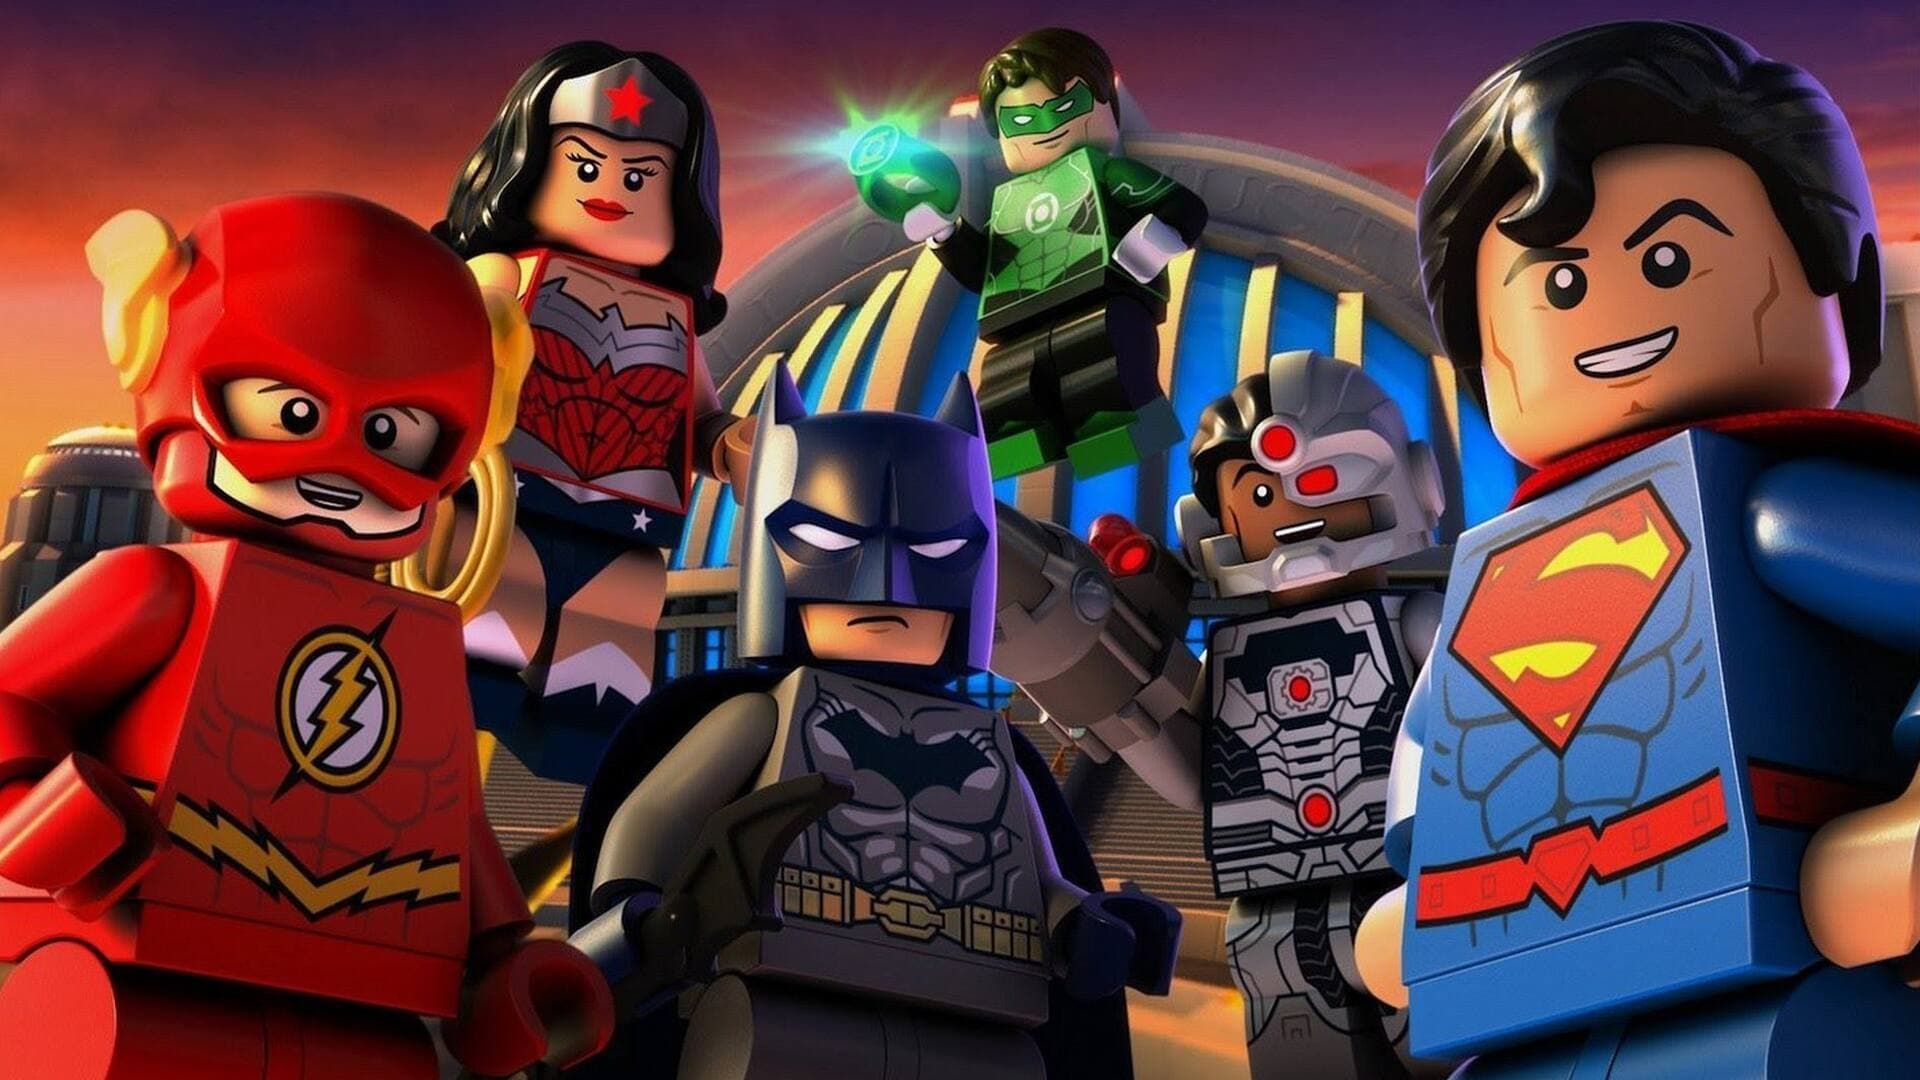 LEGO DC Comics Super Heroes: Justice League: Cosmic Clash (2016)